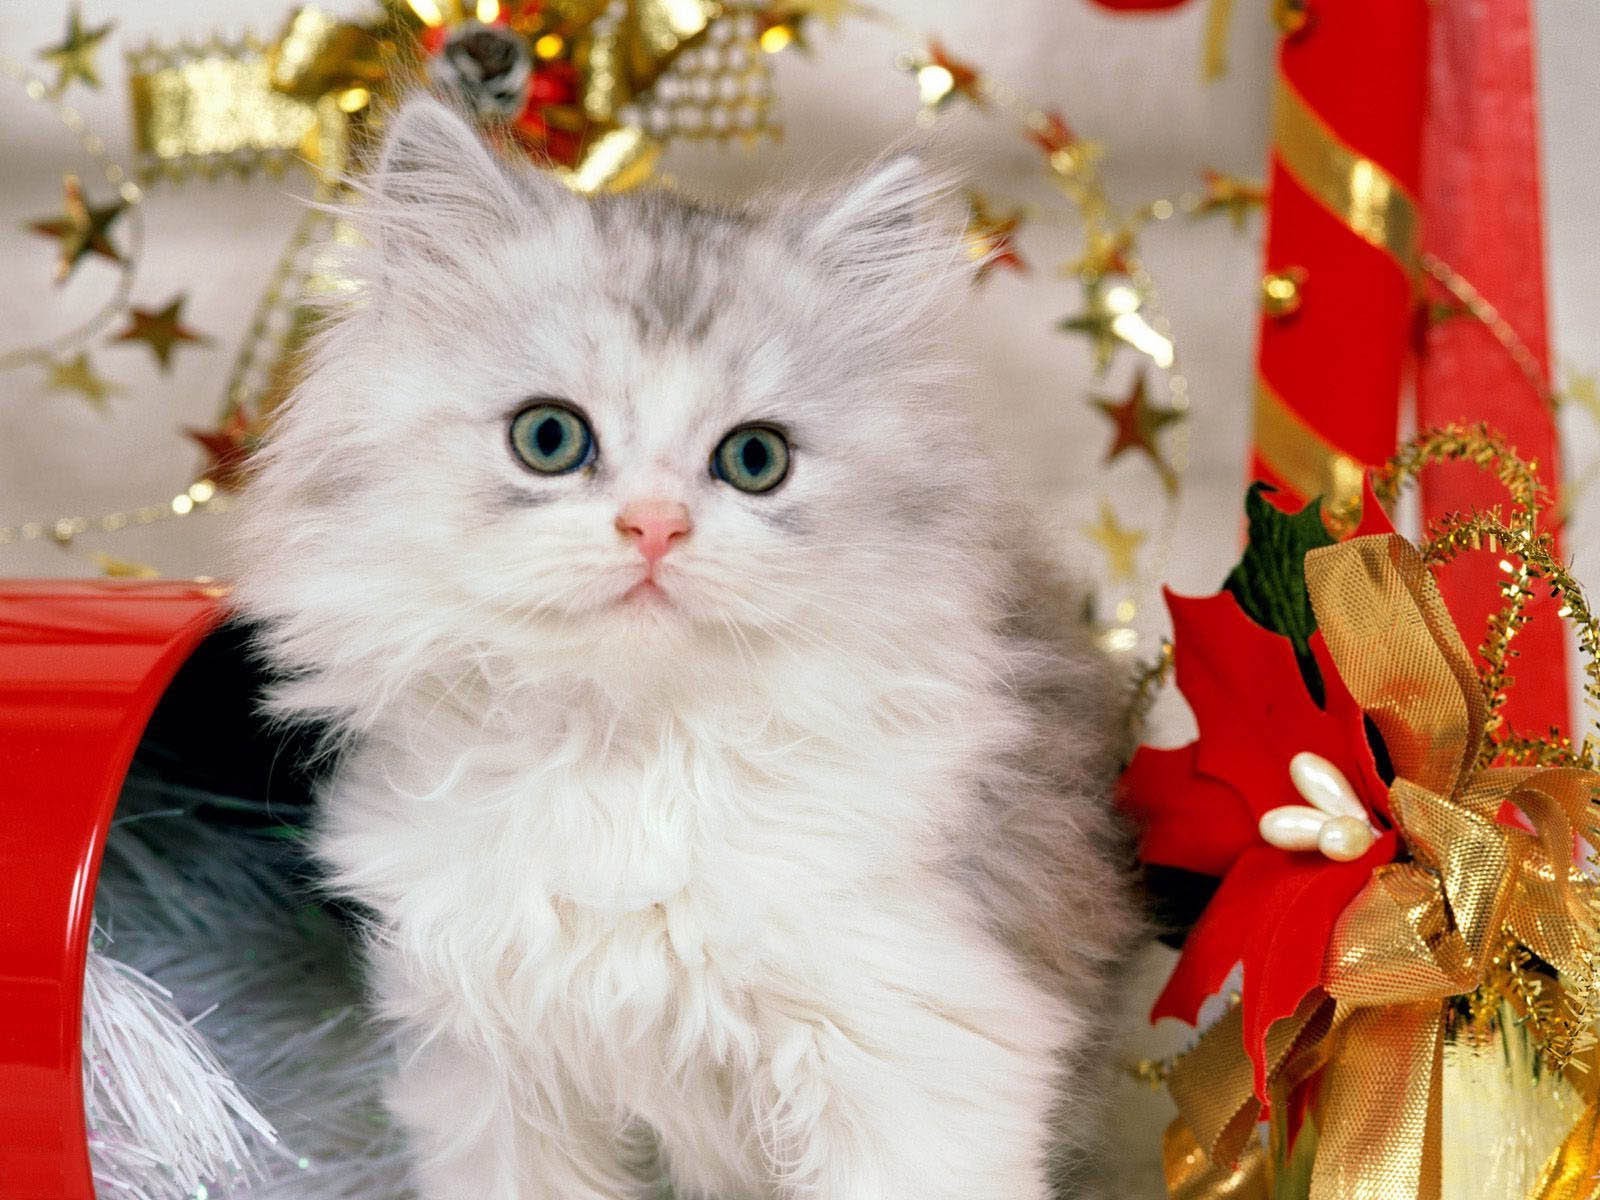 cats christmas celebration cat gift portrait cute fur